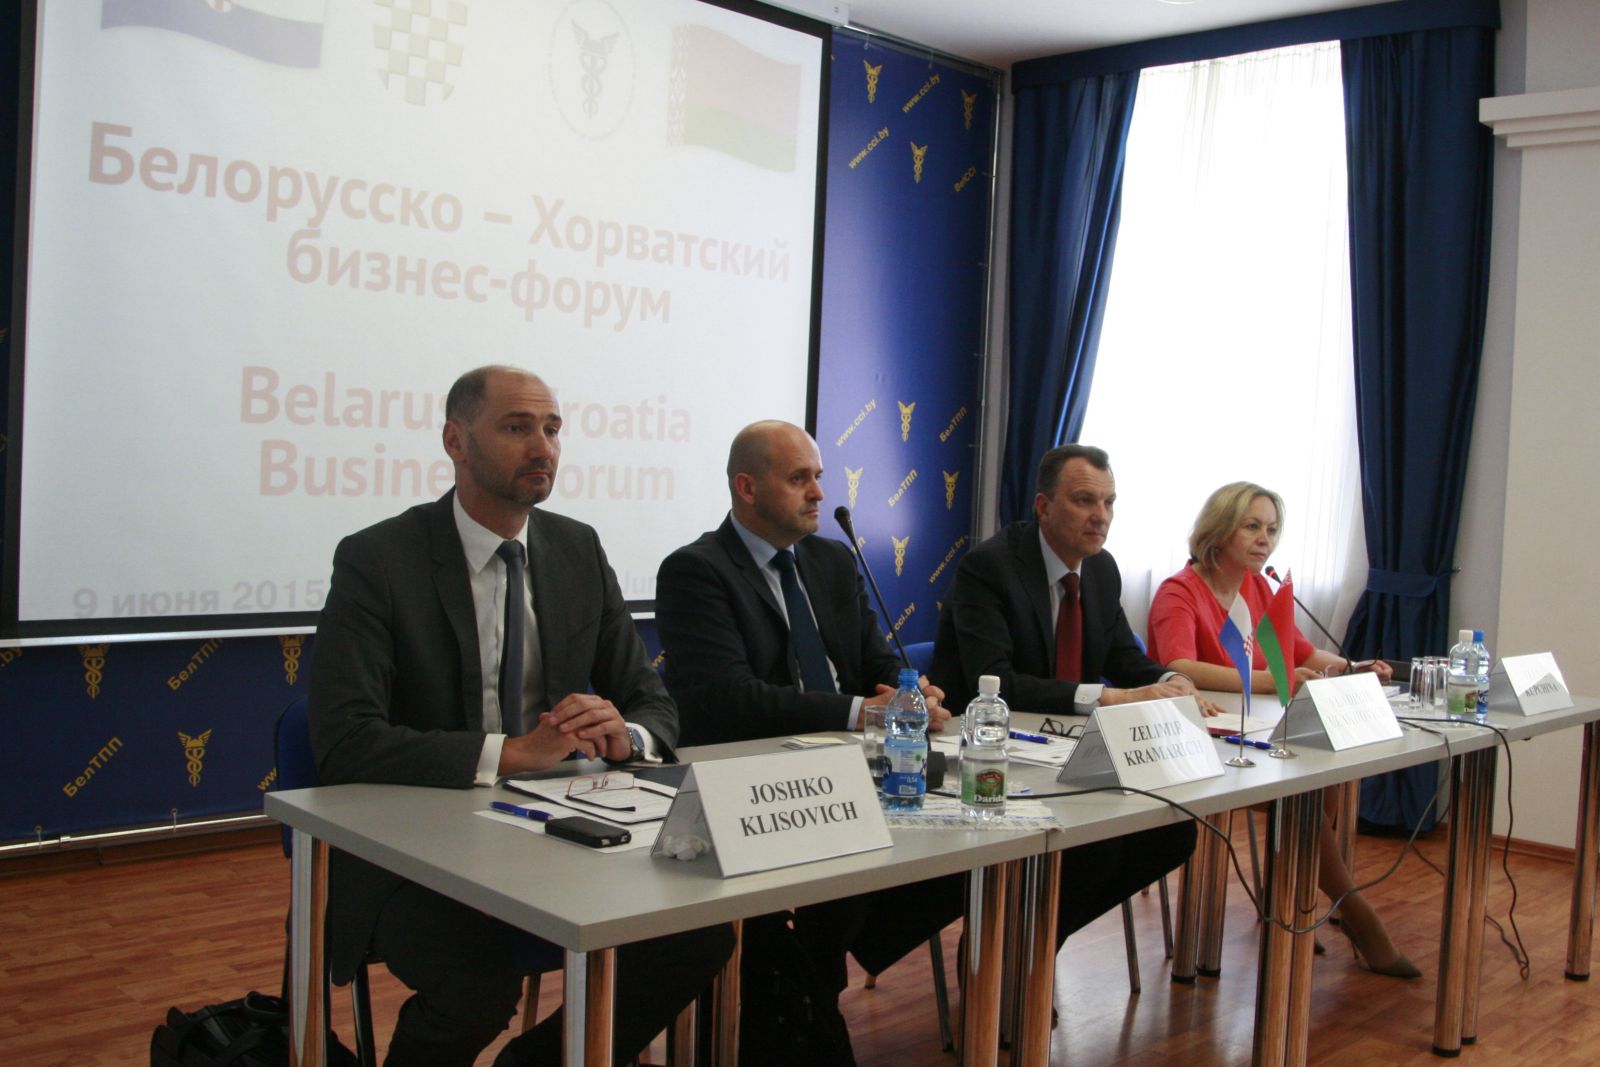 Белорусско-Хорватский бизнес-форум